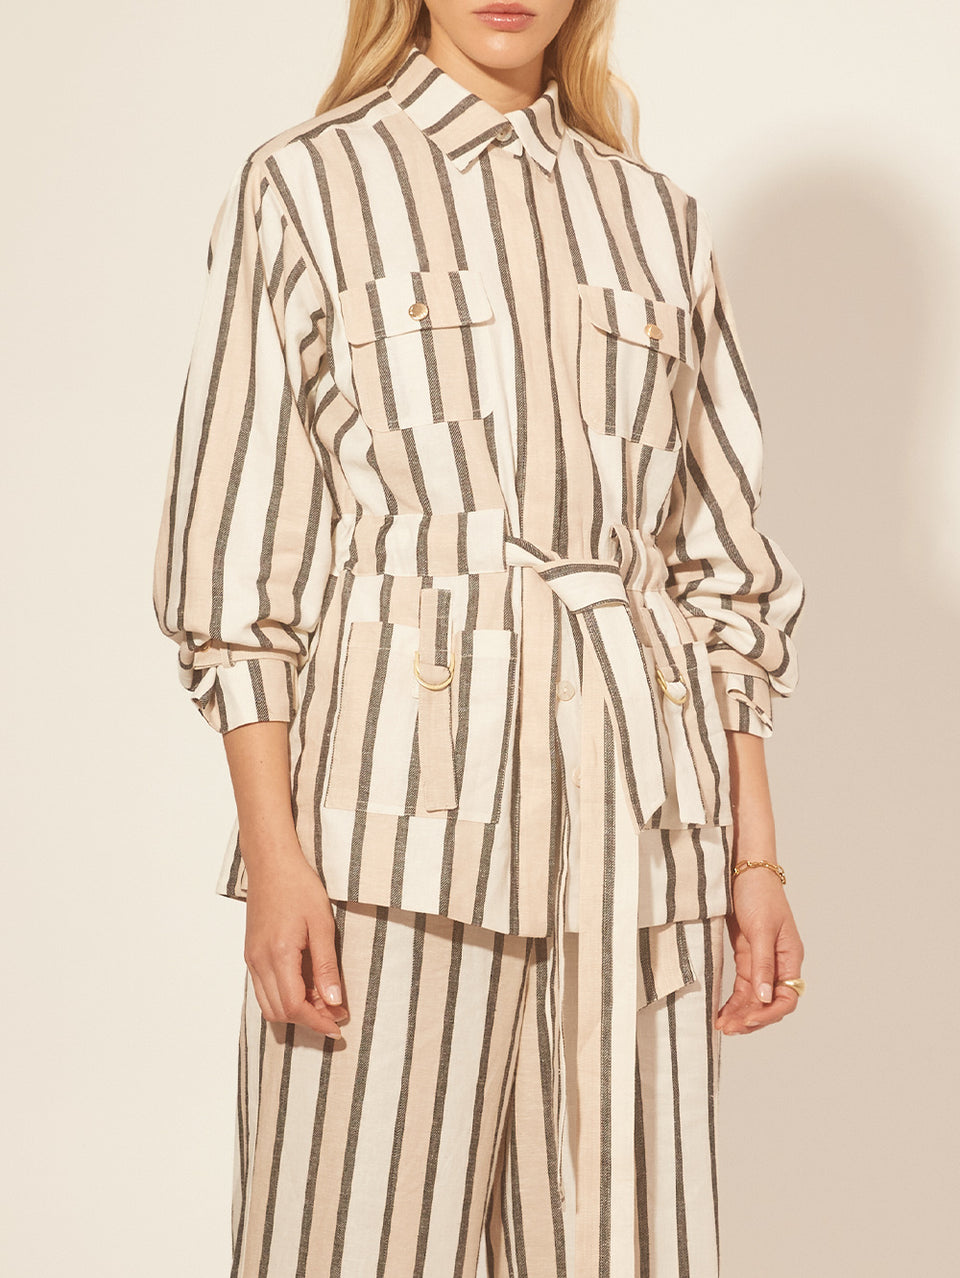 Oaklee Jacket KIVARI | Model wears stripe jacket close up